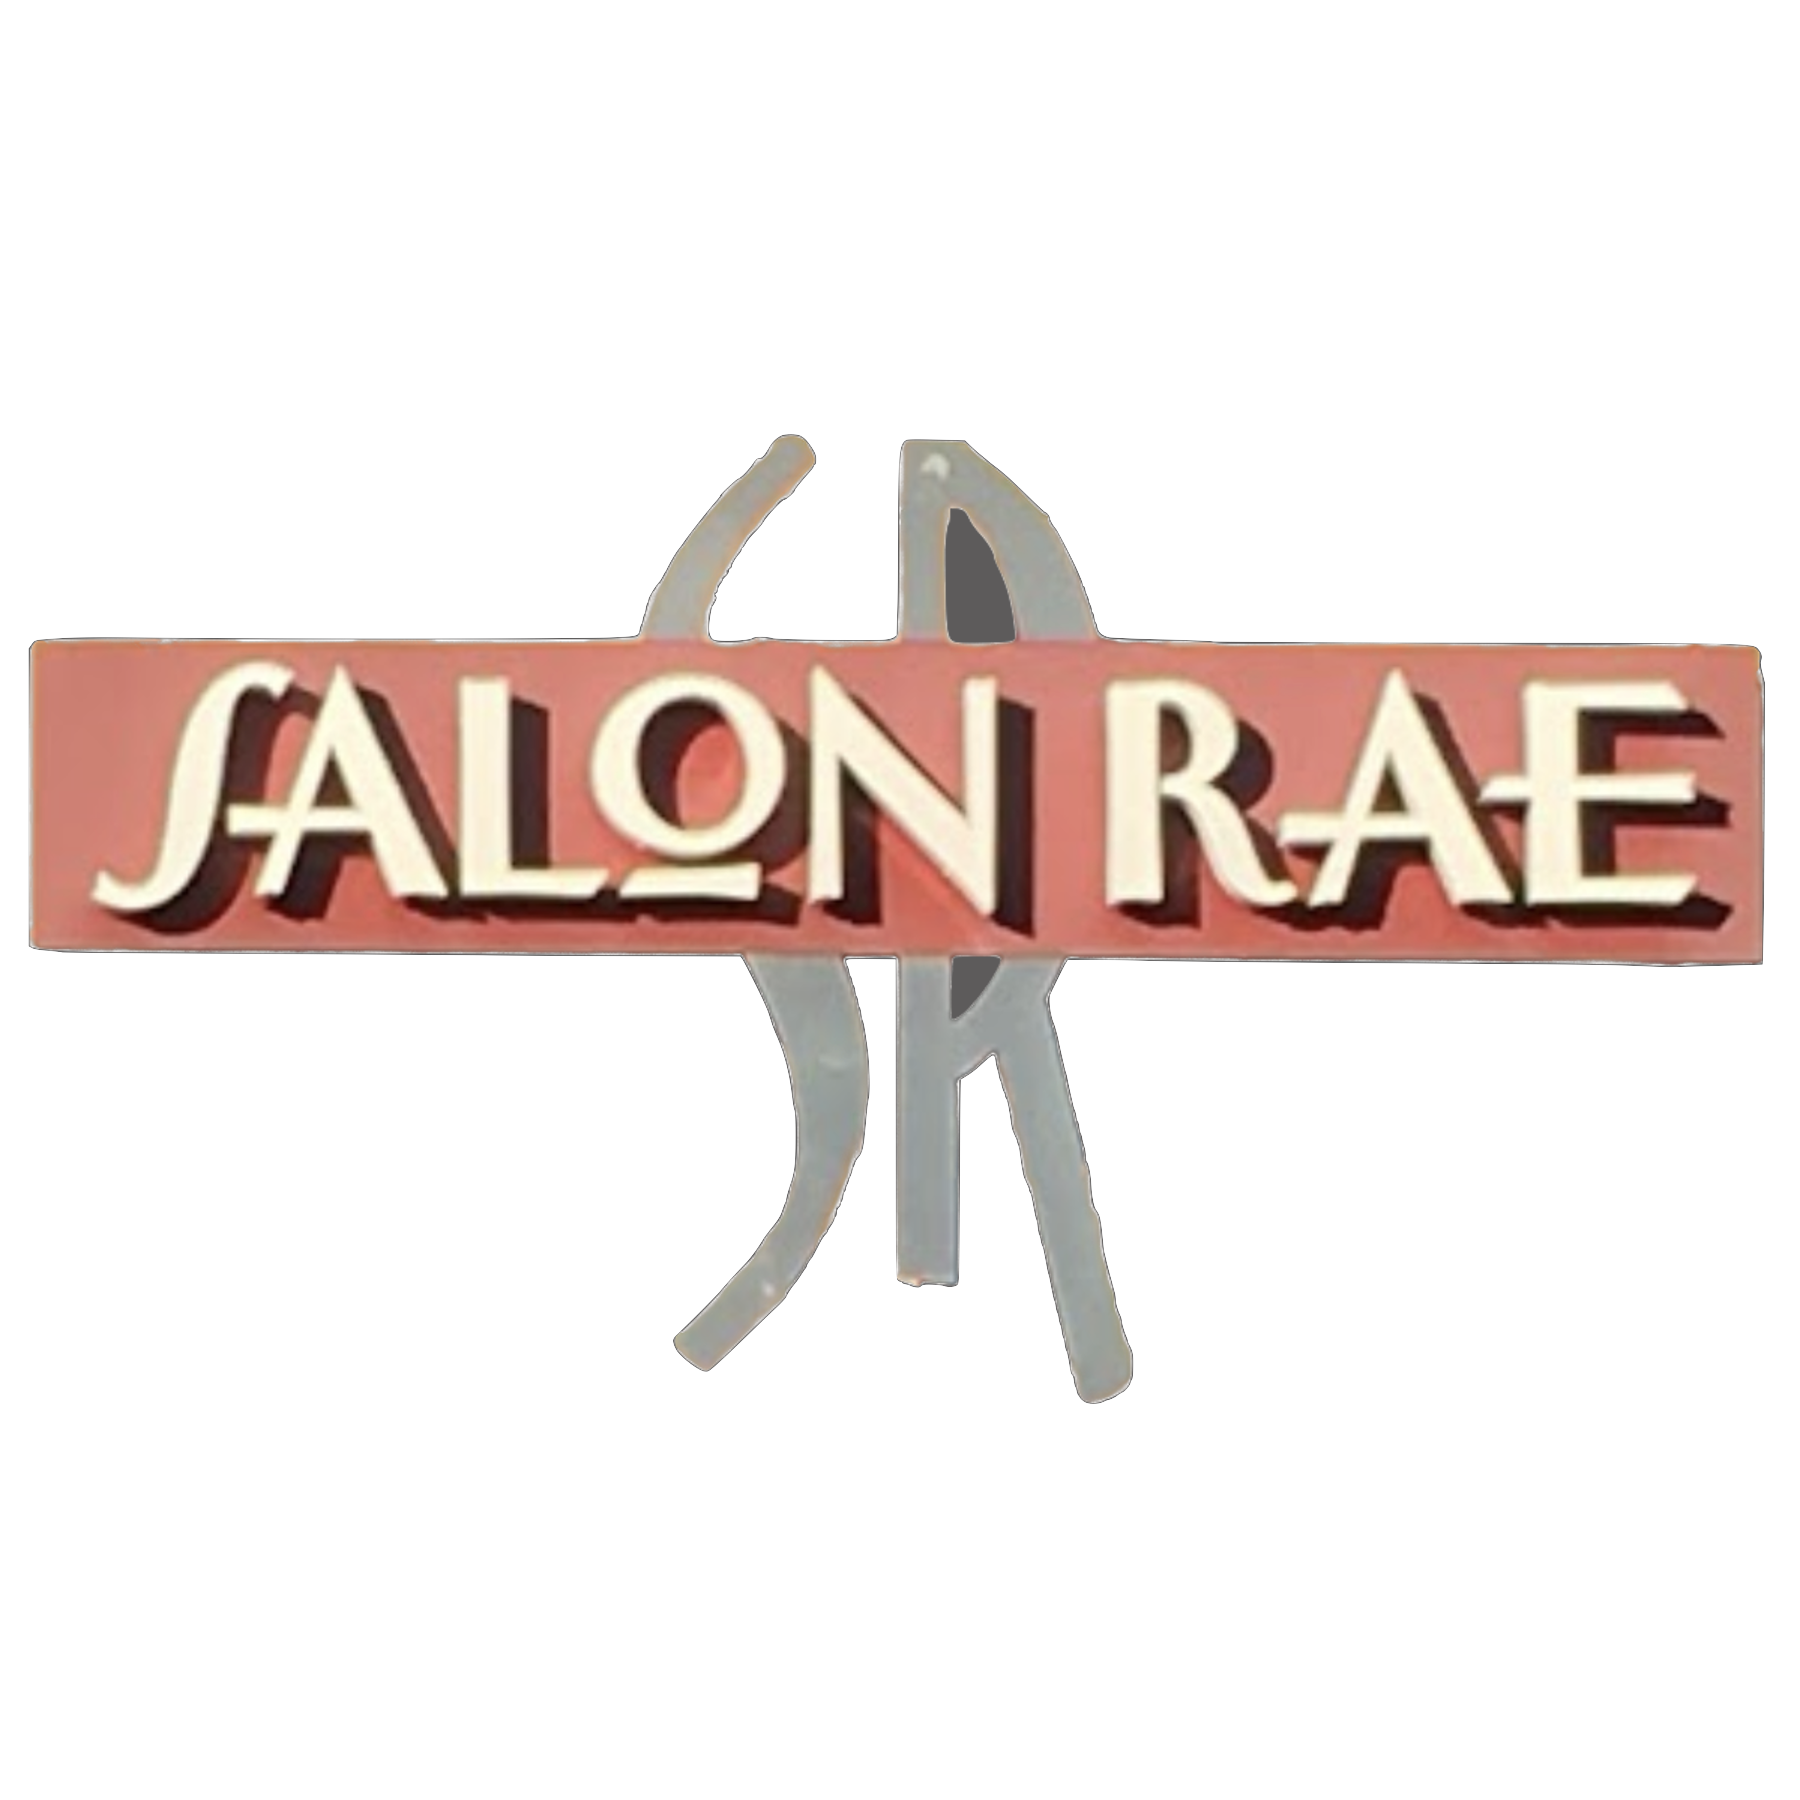 Salon-Rae-Juanita.png